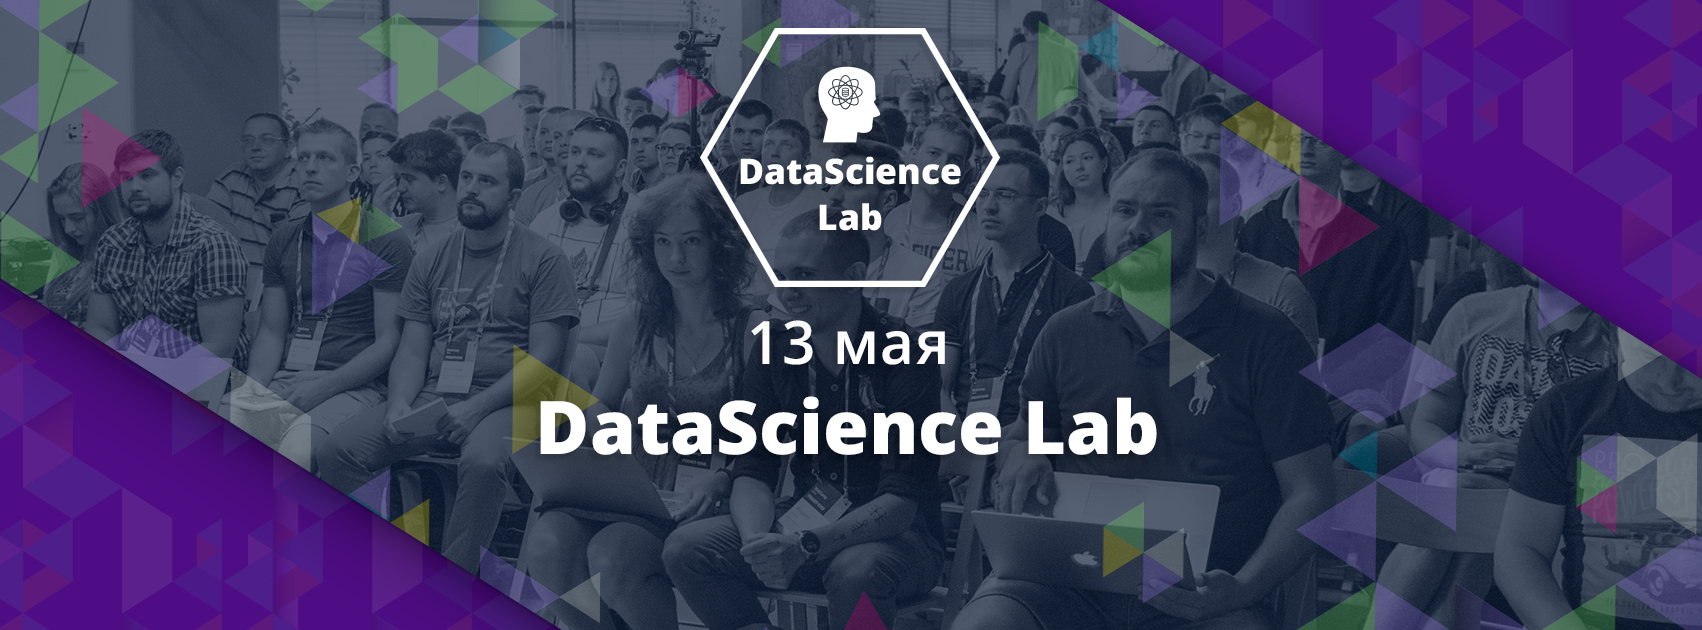 Приглашаем на IV конференцию по практическому применению науки о данных DataScience Lab 13 мая - 1